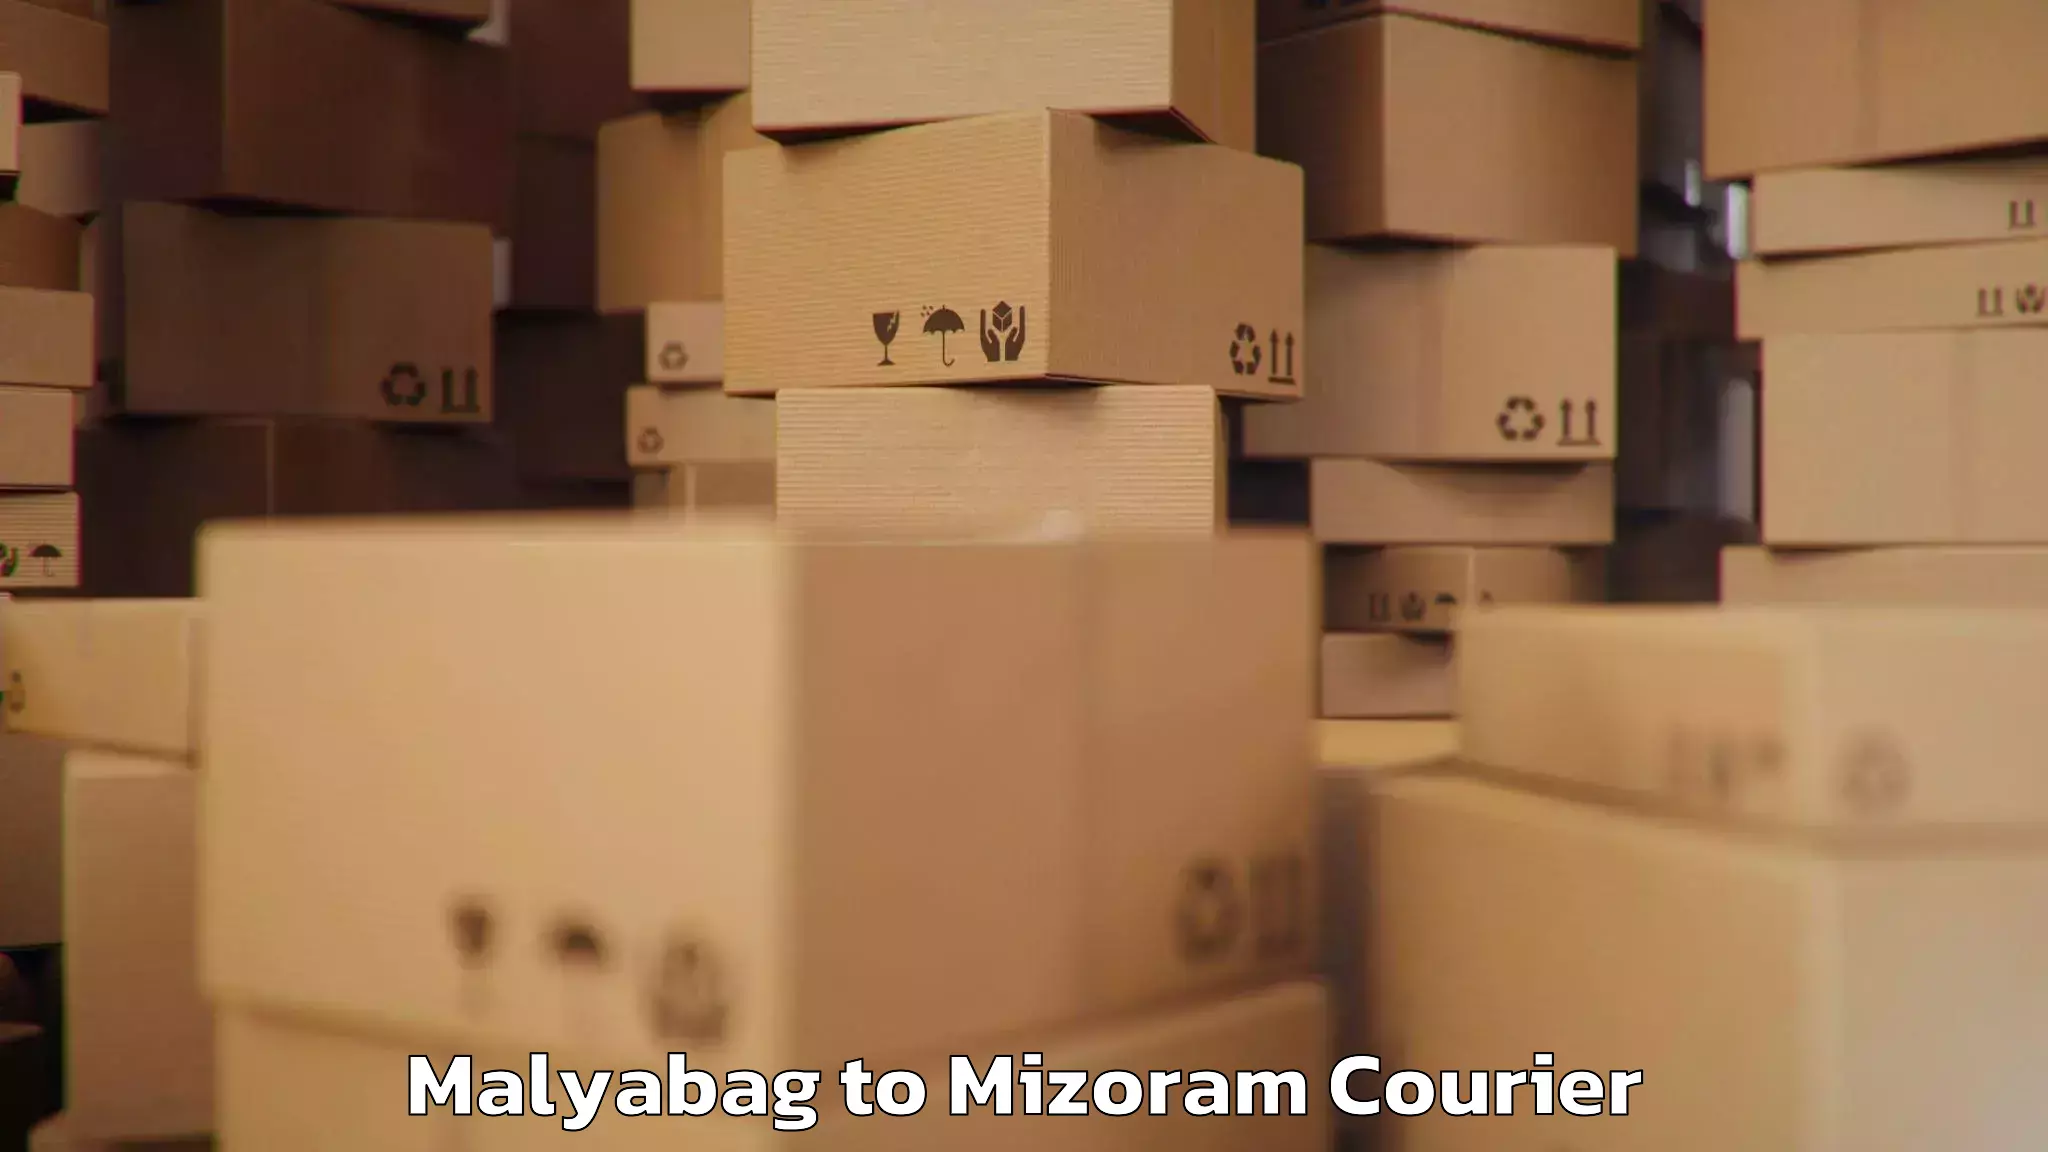 Baggage transport professionals Malyabag to Mizoram